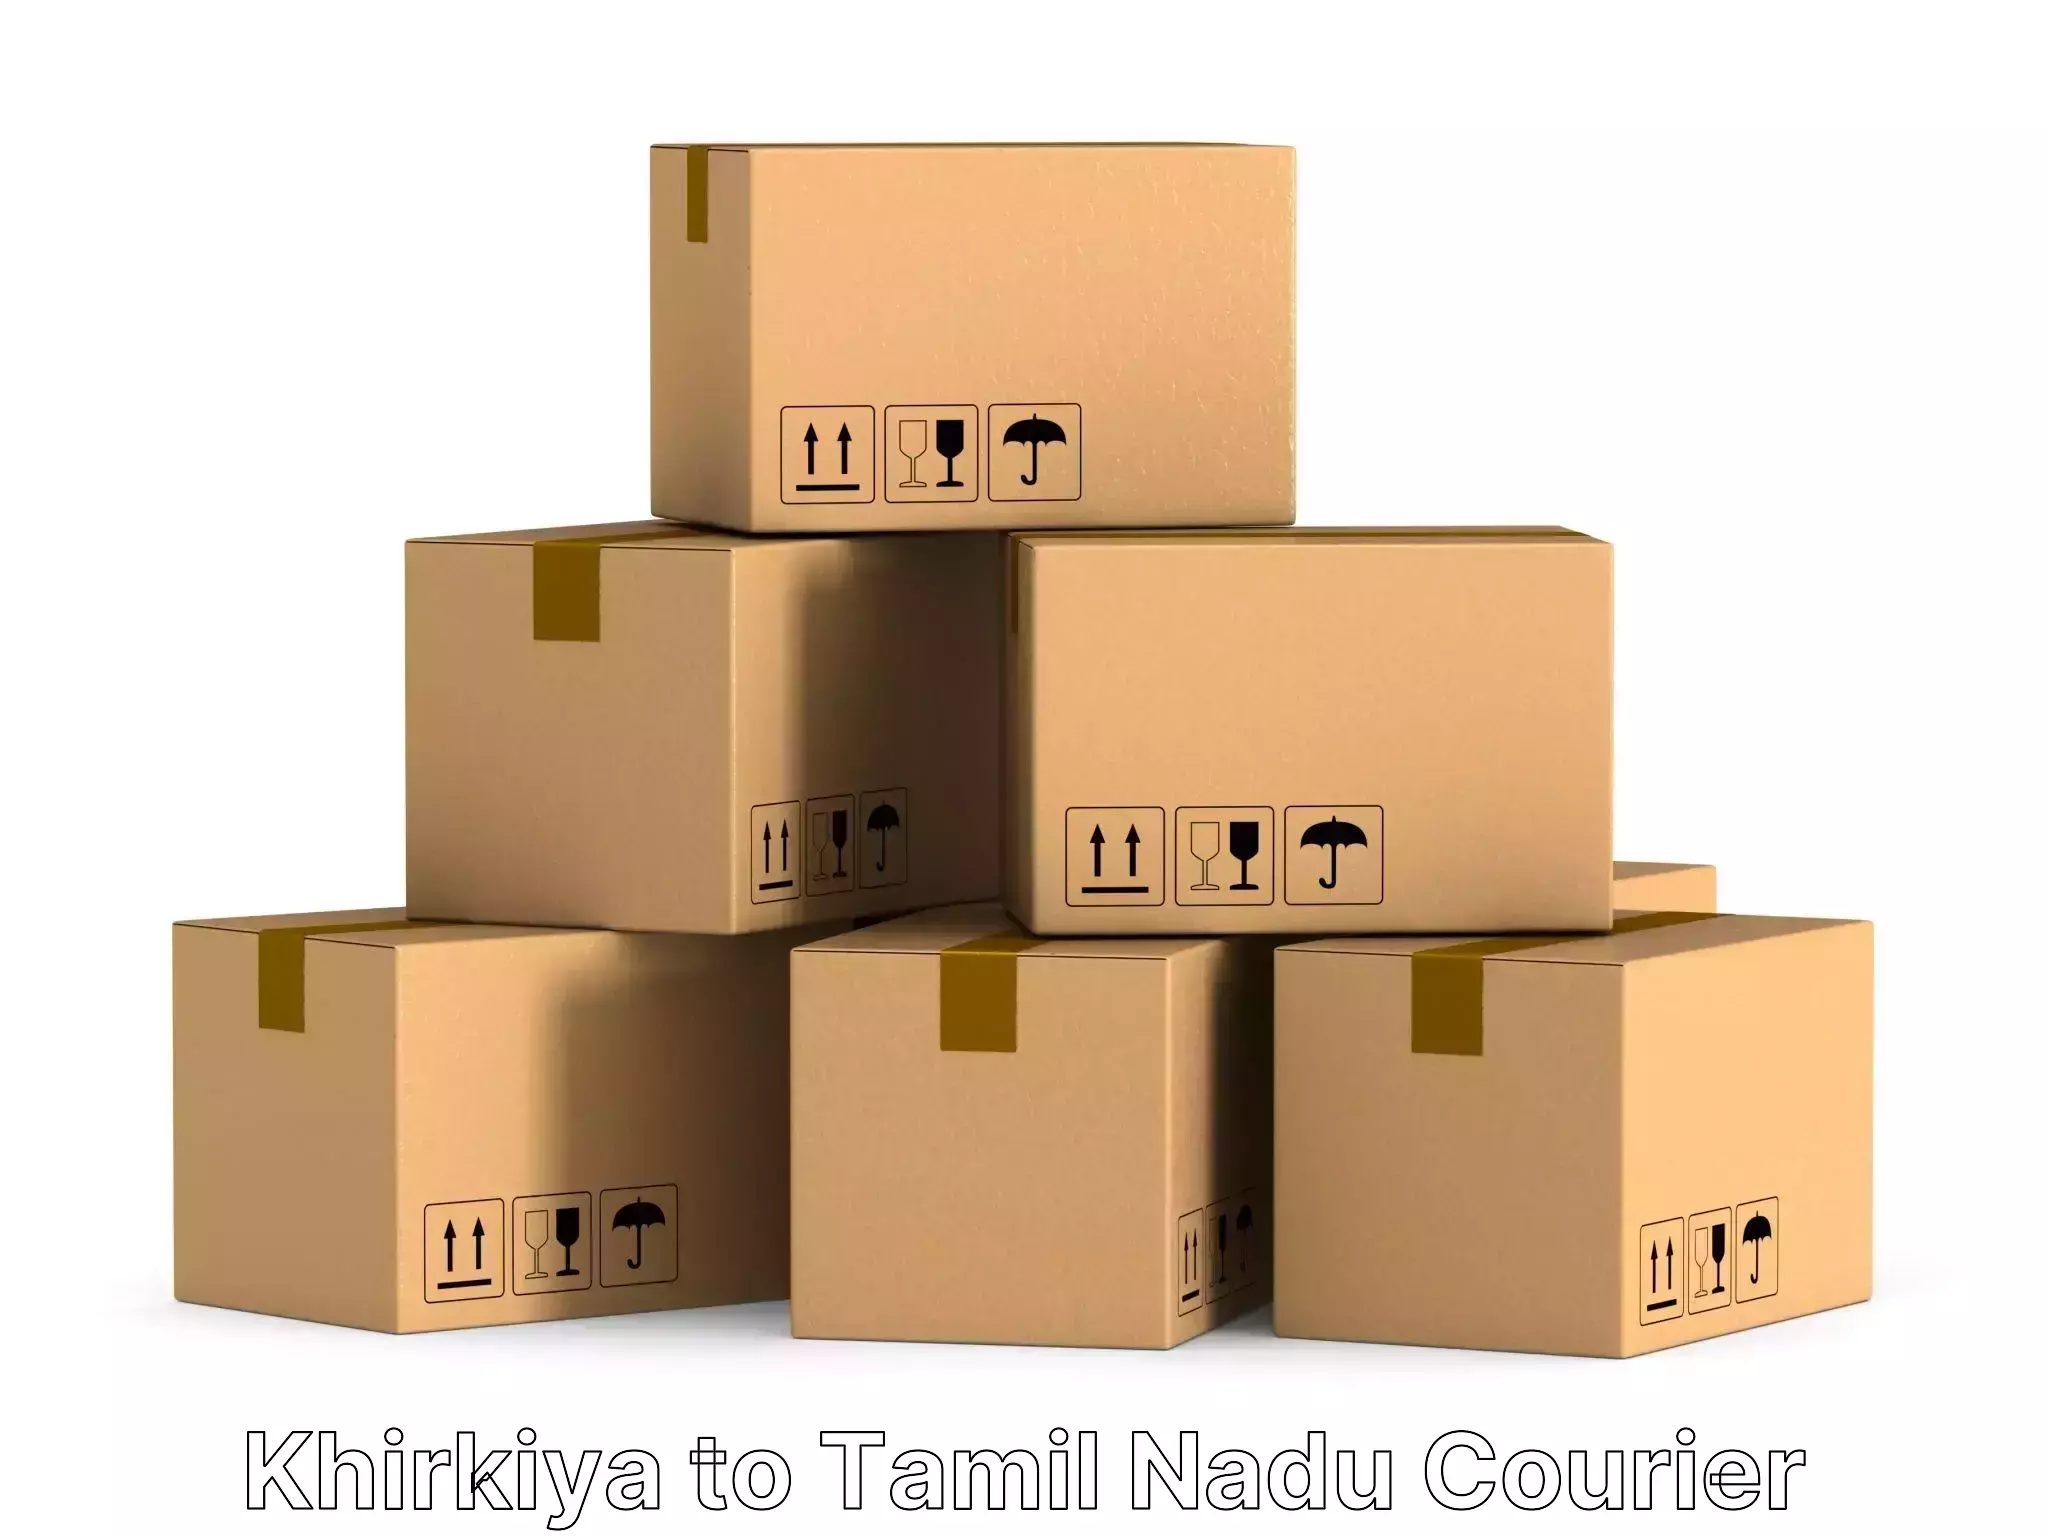 Custom relocation services in Khirkiya to Tamil Nadu